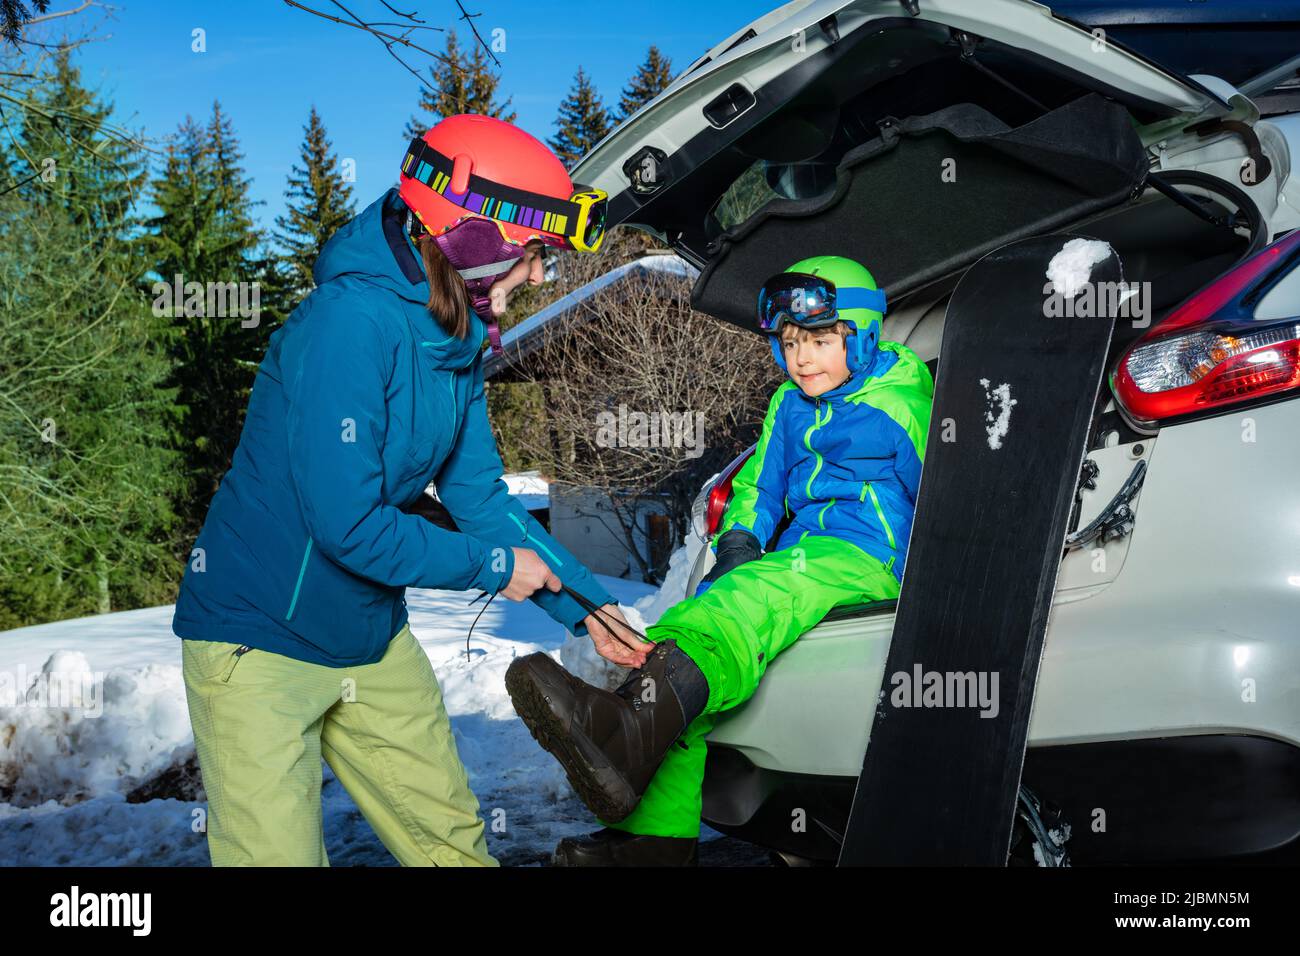 Mutter hilft dem Jungen, Snowboardschuhe auf dem Parkplatz anzuziehen Stockfoto